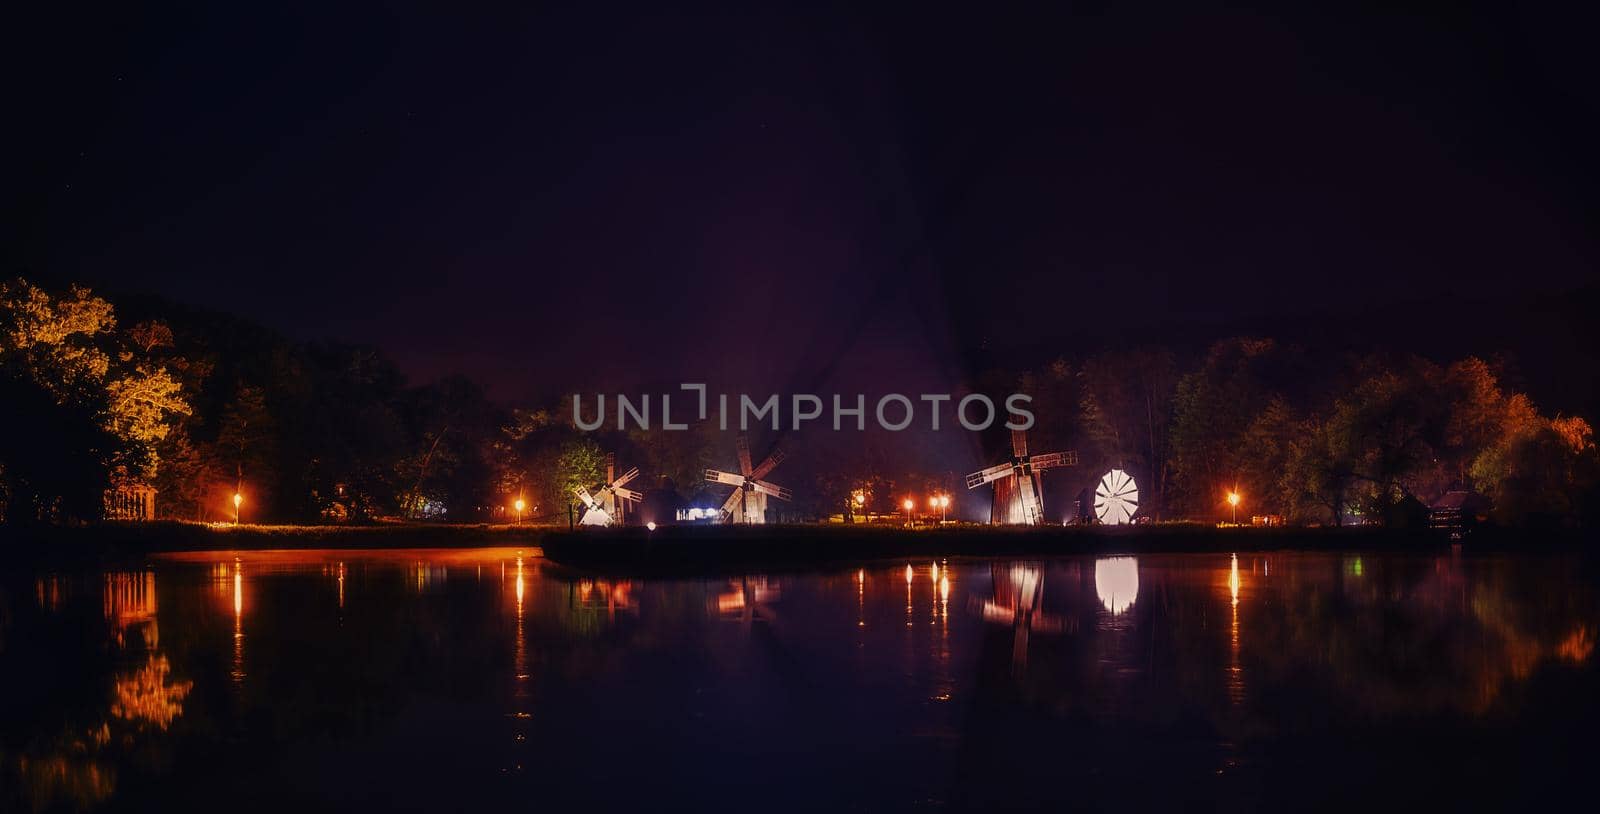 Windmills on lake by night